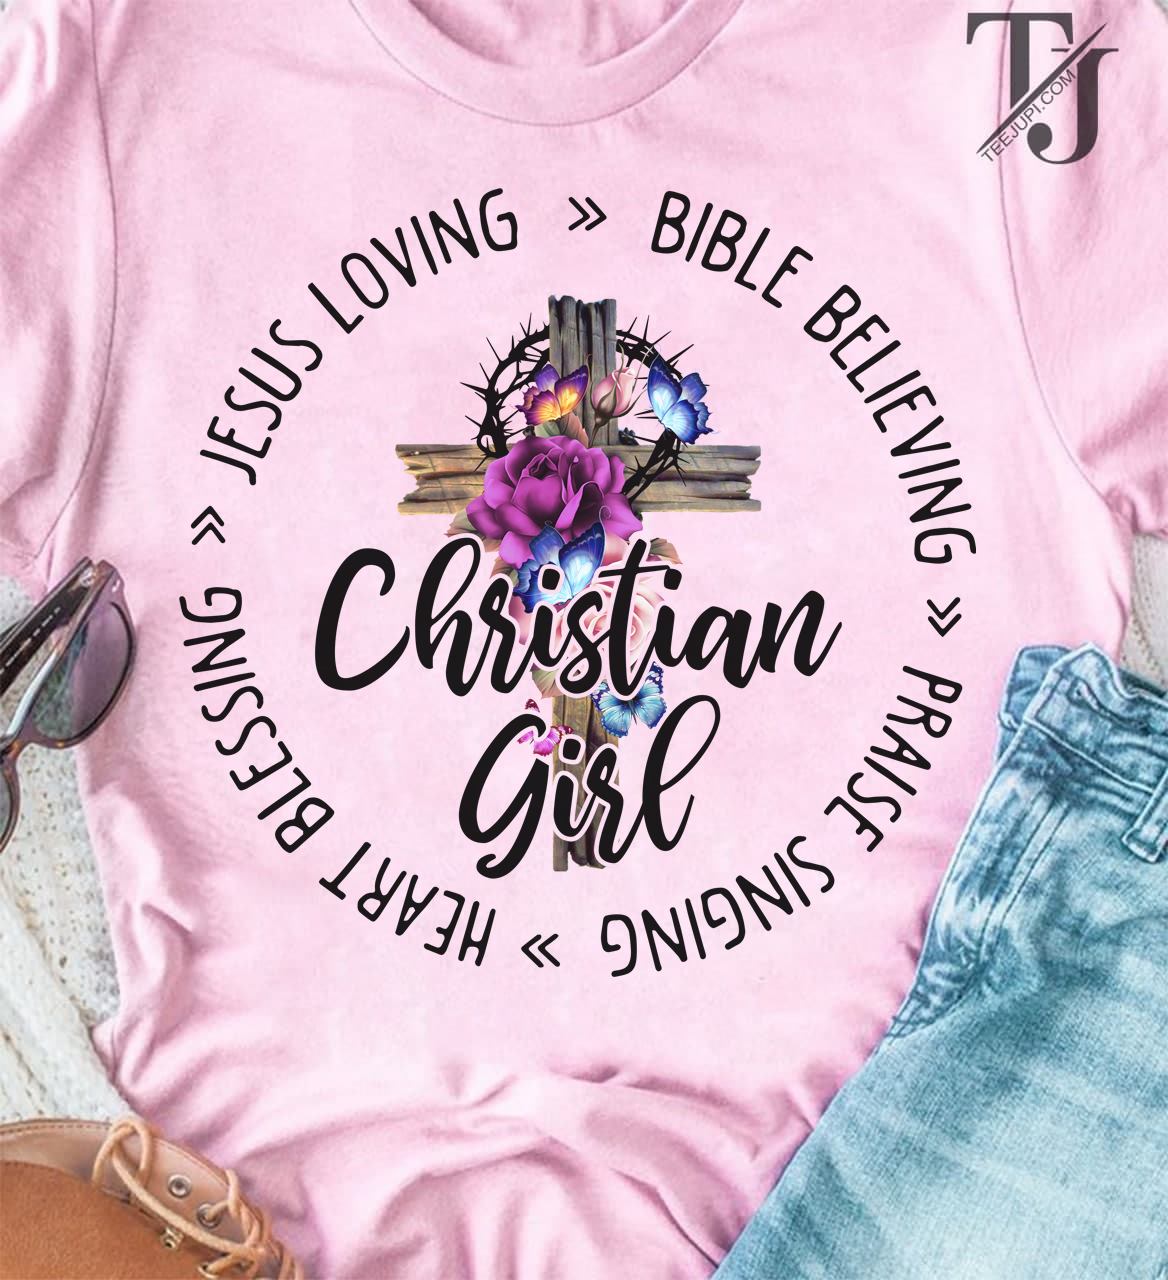 Jesus loving bible believing preise singing heart blessing - Christian girl